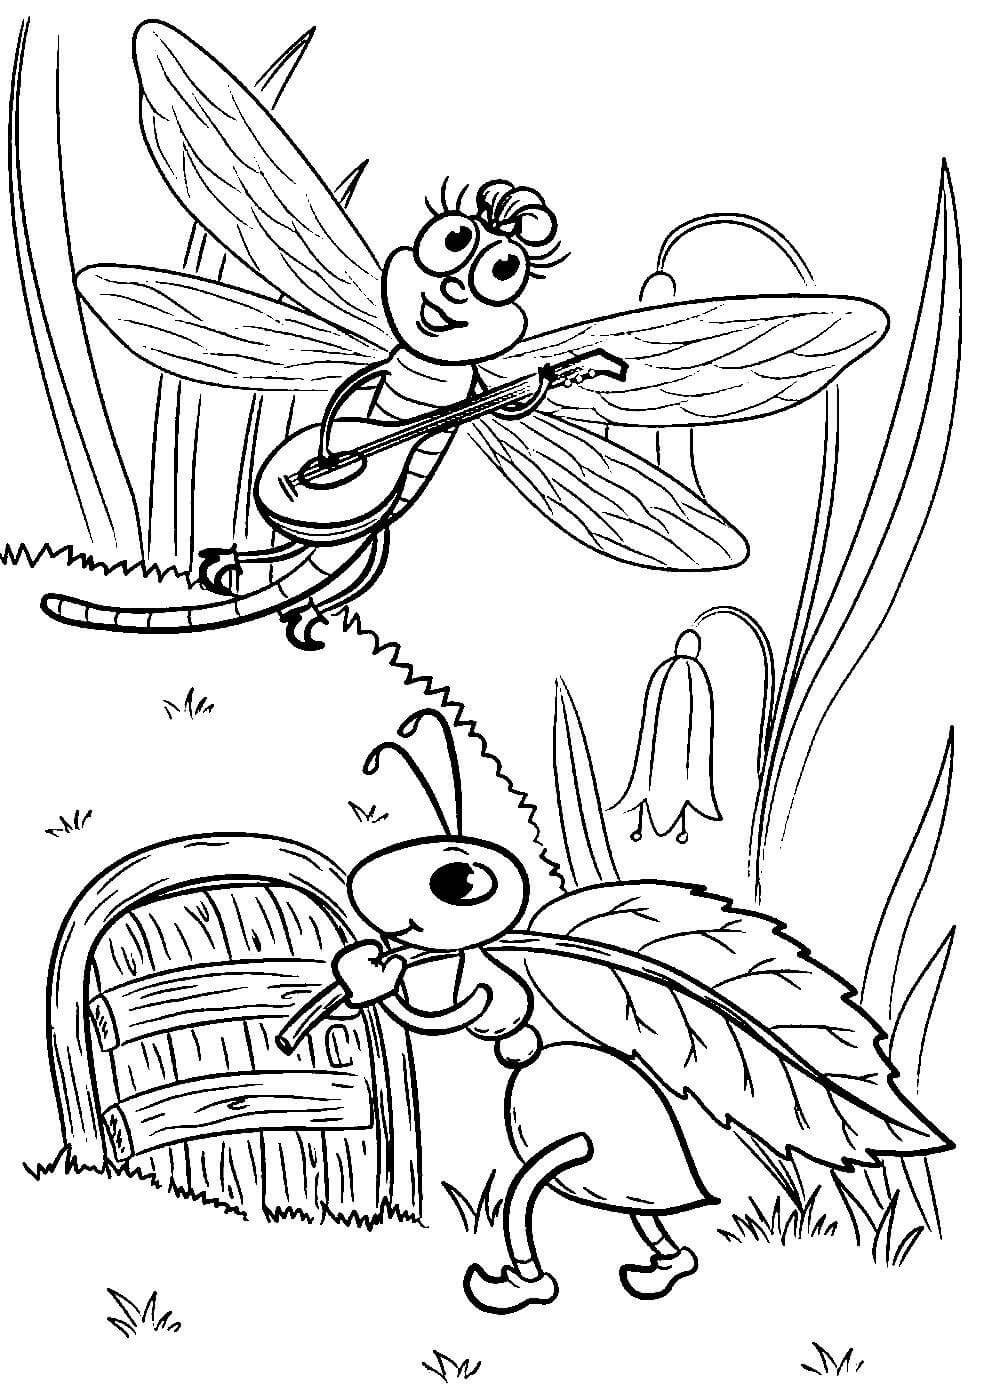 Иллюстрация к басне Крылова Стрекоза и муравей